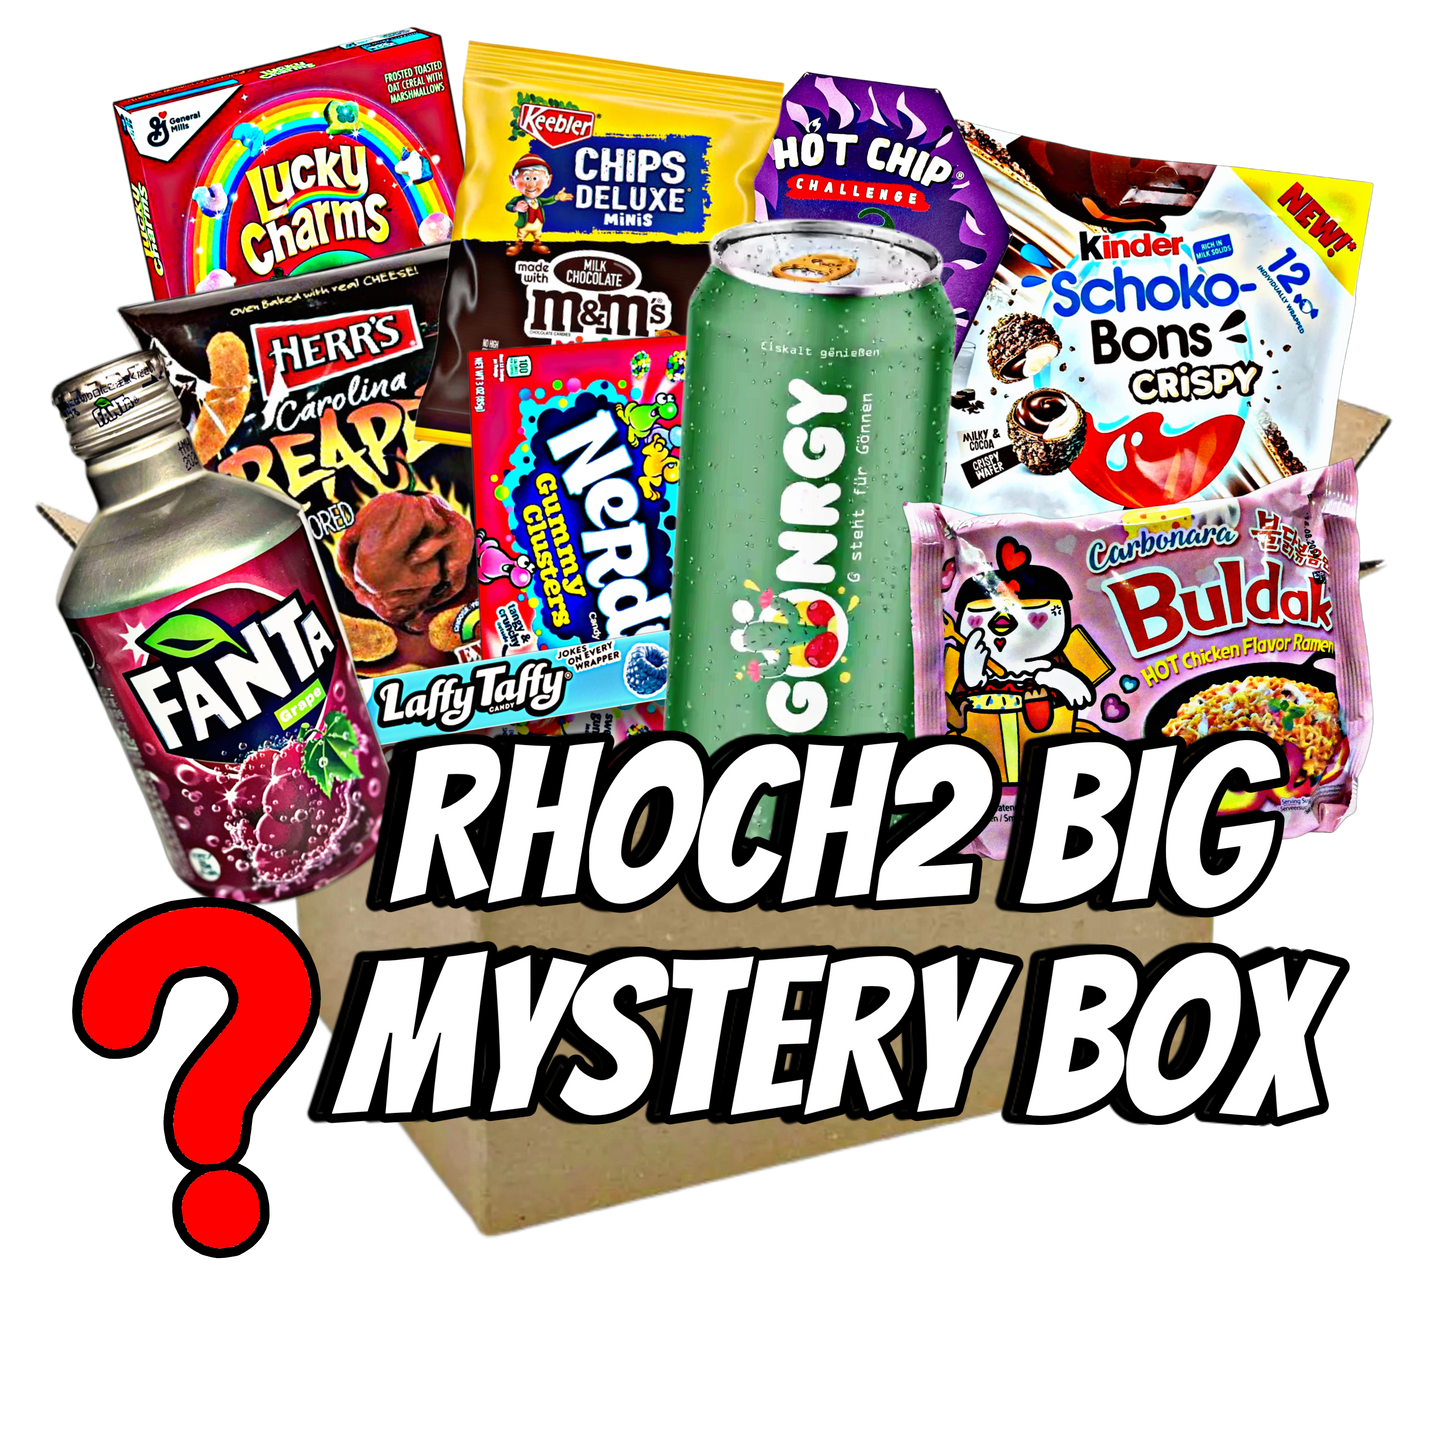 Rhoch2 Big Mystery Box